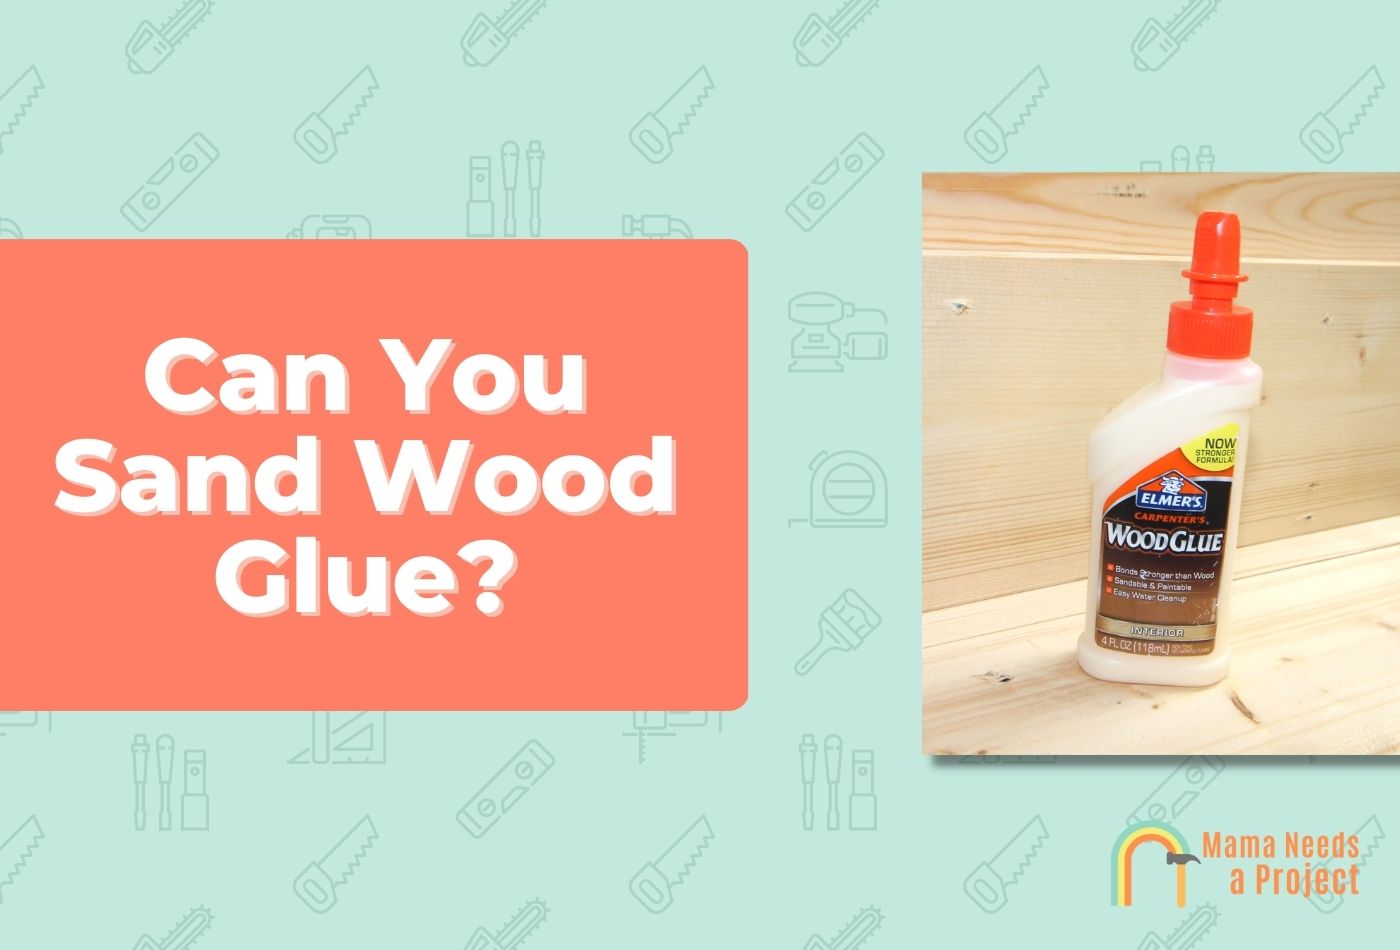 Can You Sand Wood Glue